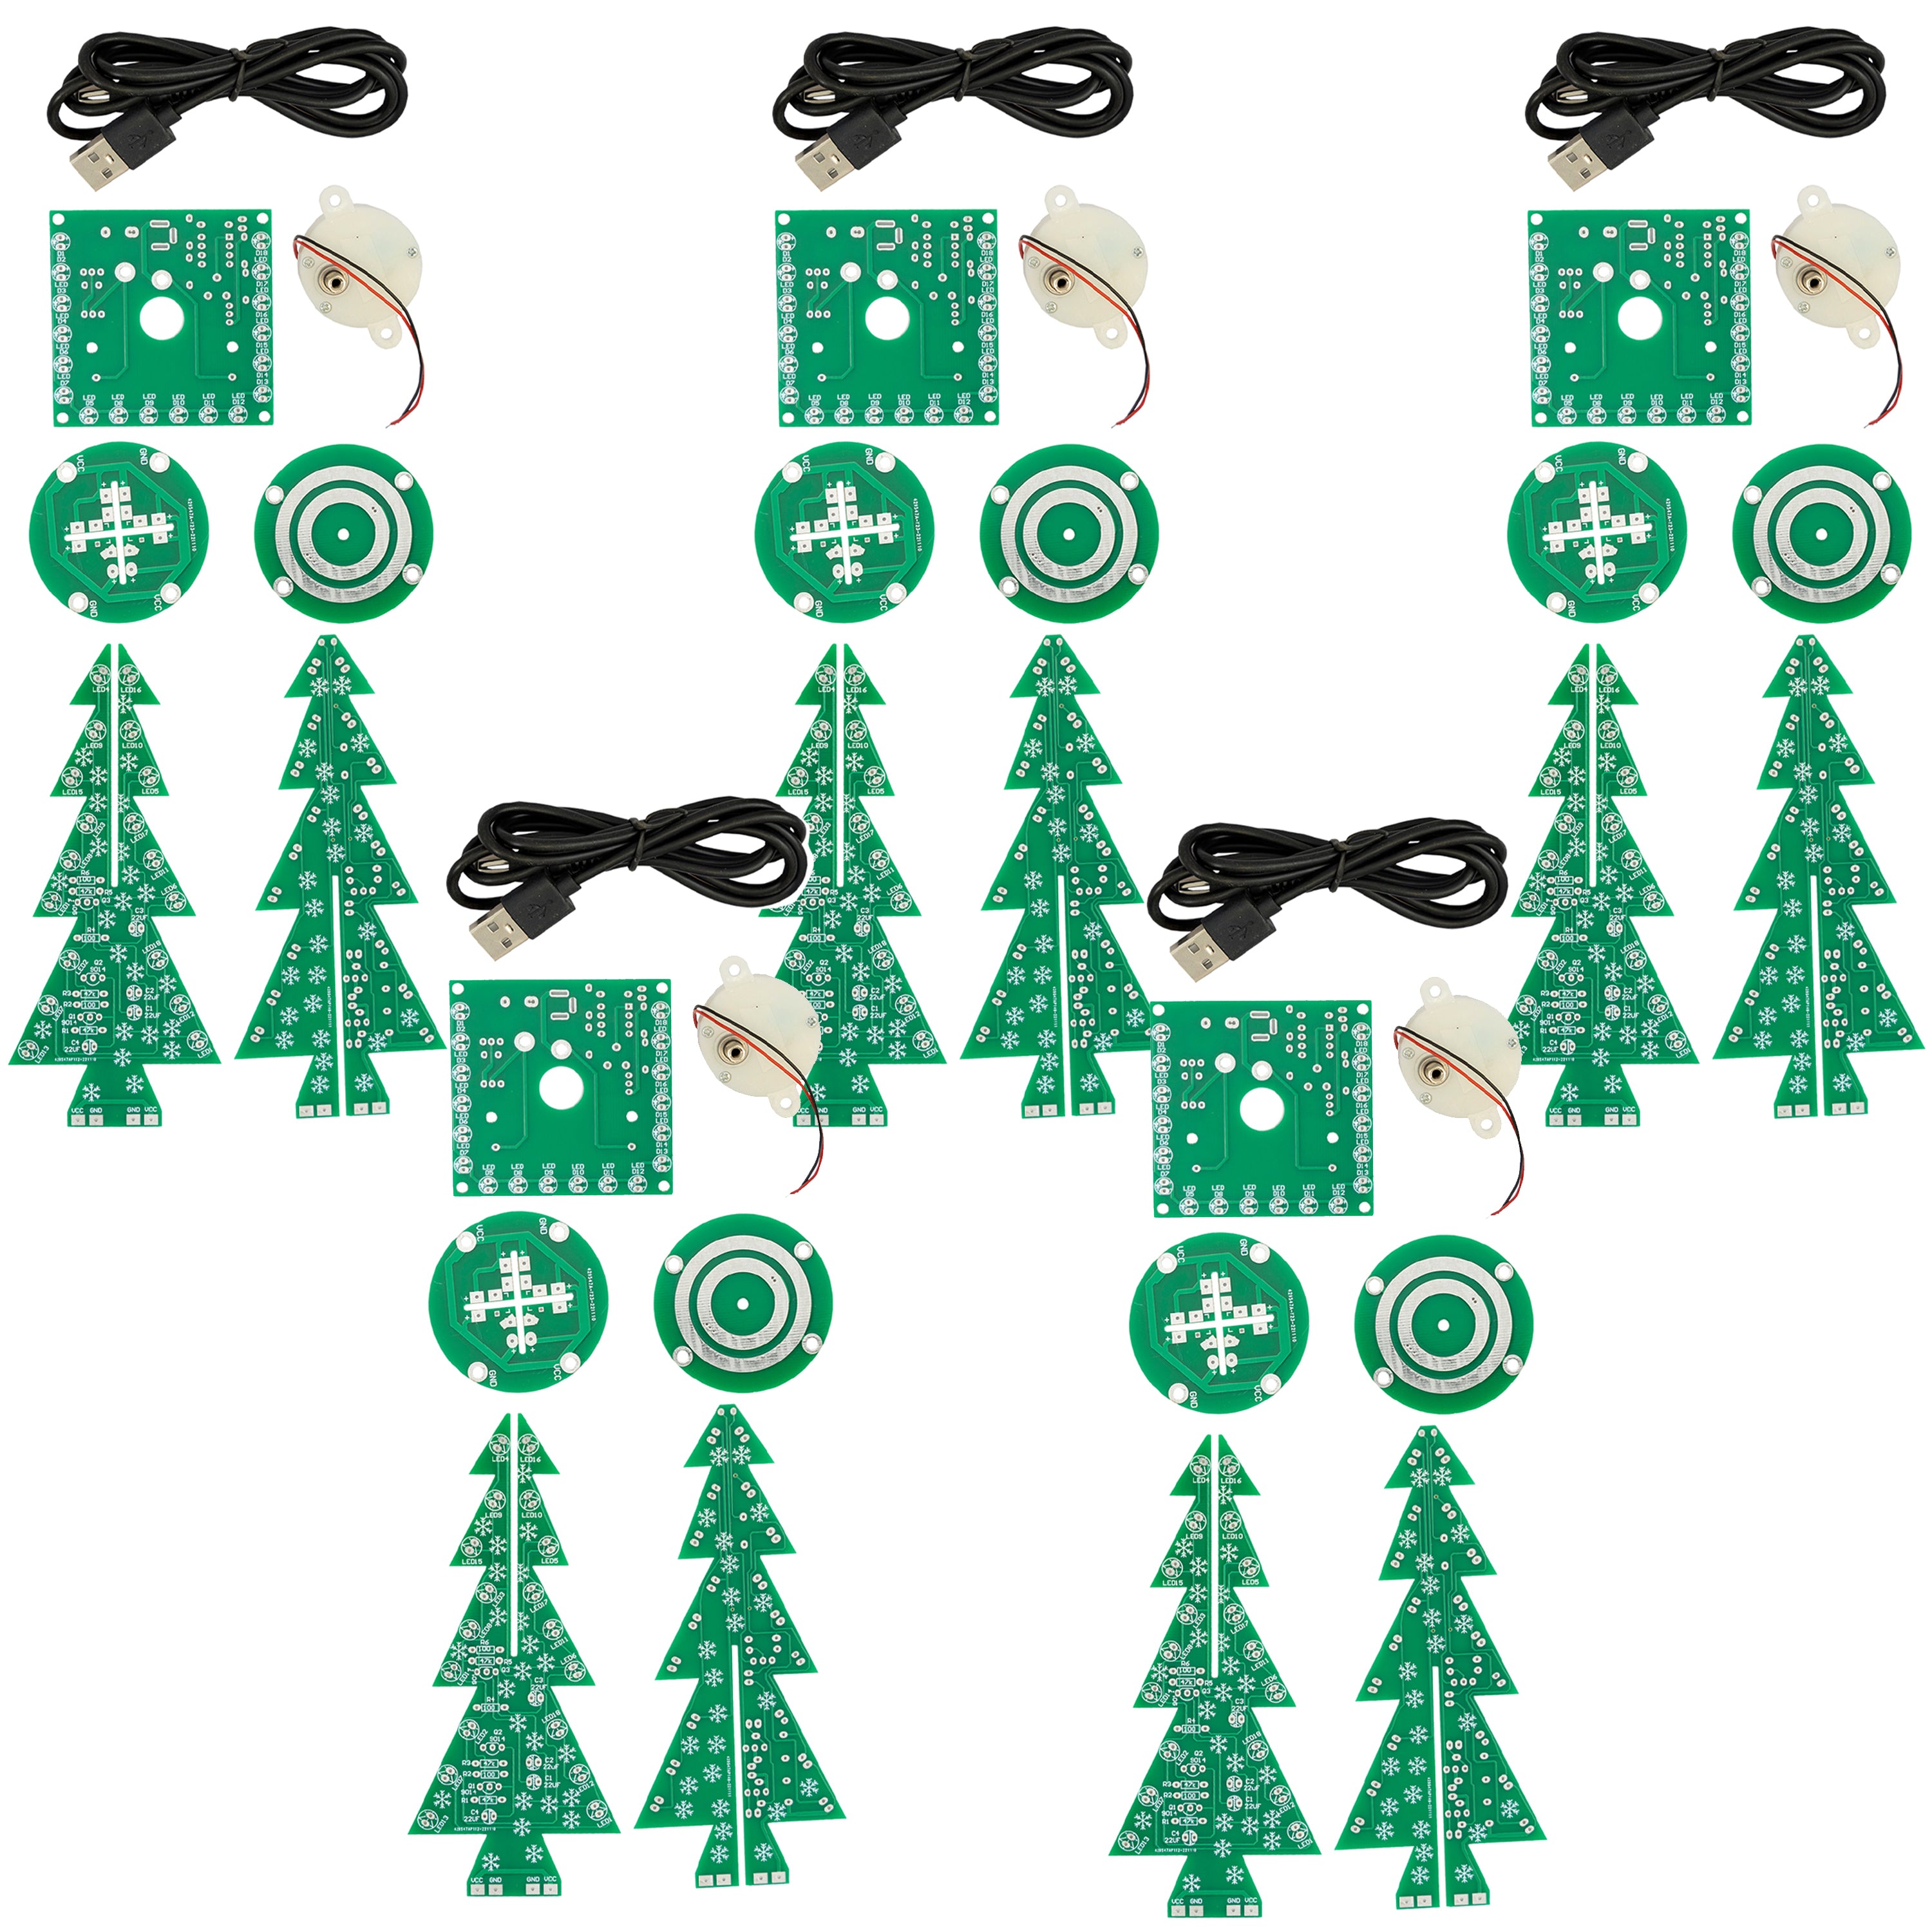 DIY LED Weihnachtsbaum Kit: Weihnachtsbaum Elektronik Bausatz zum Löten - Lötbausatz für einen drehenden Weihnachtsbaum mit LEDs und USB-Anschluss